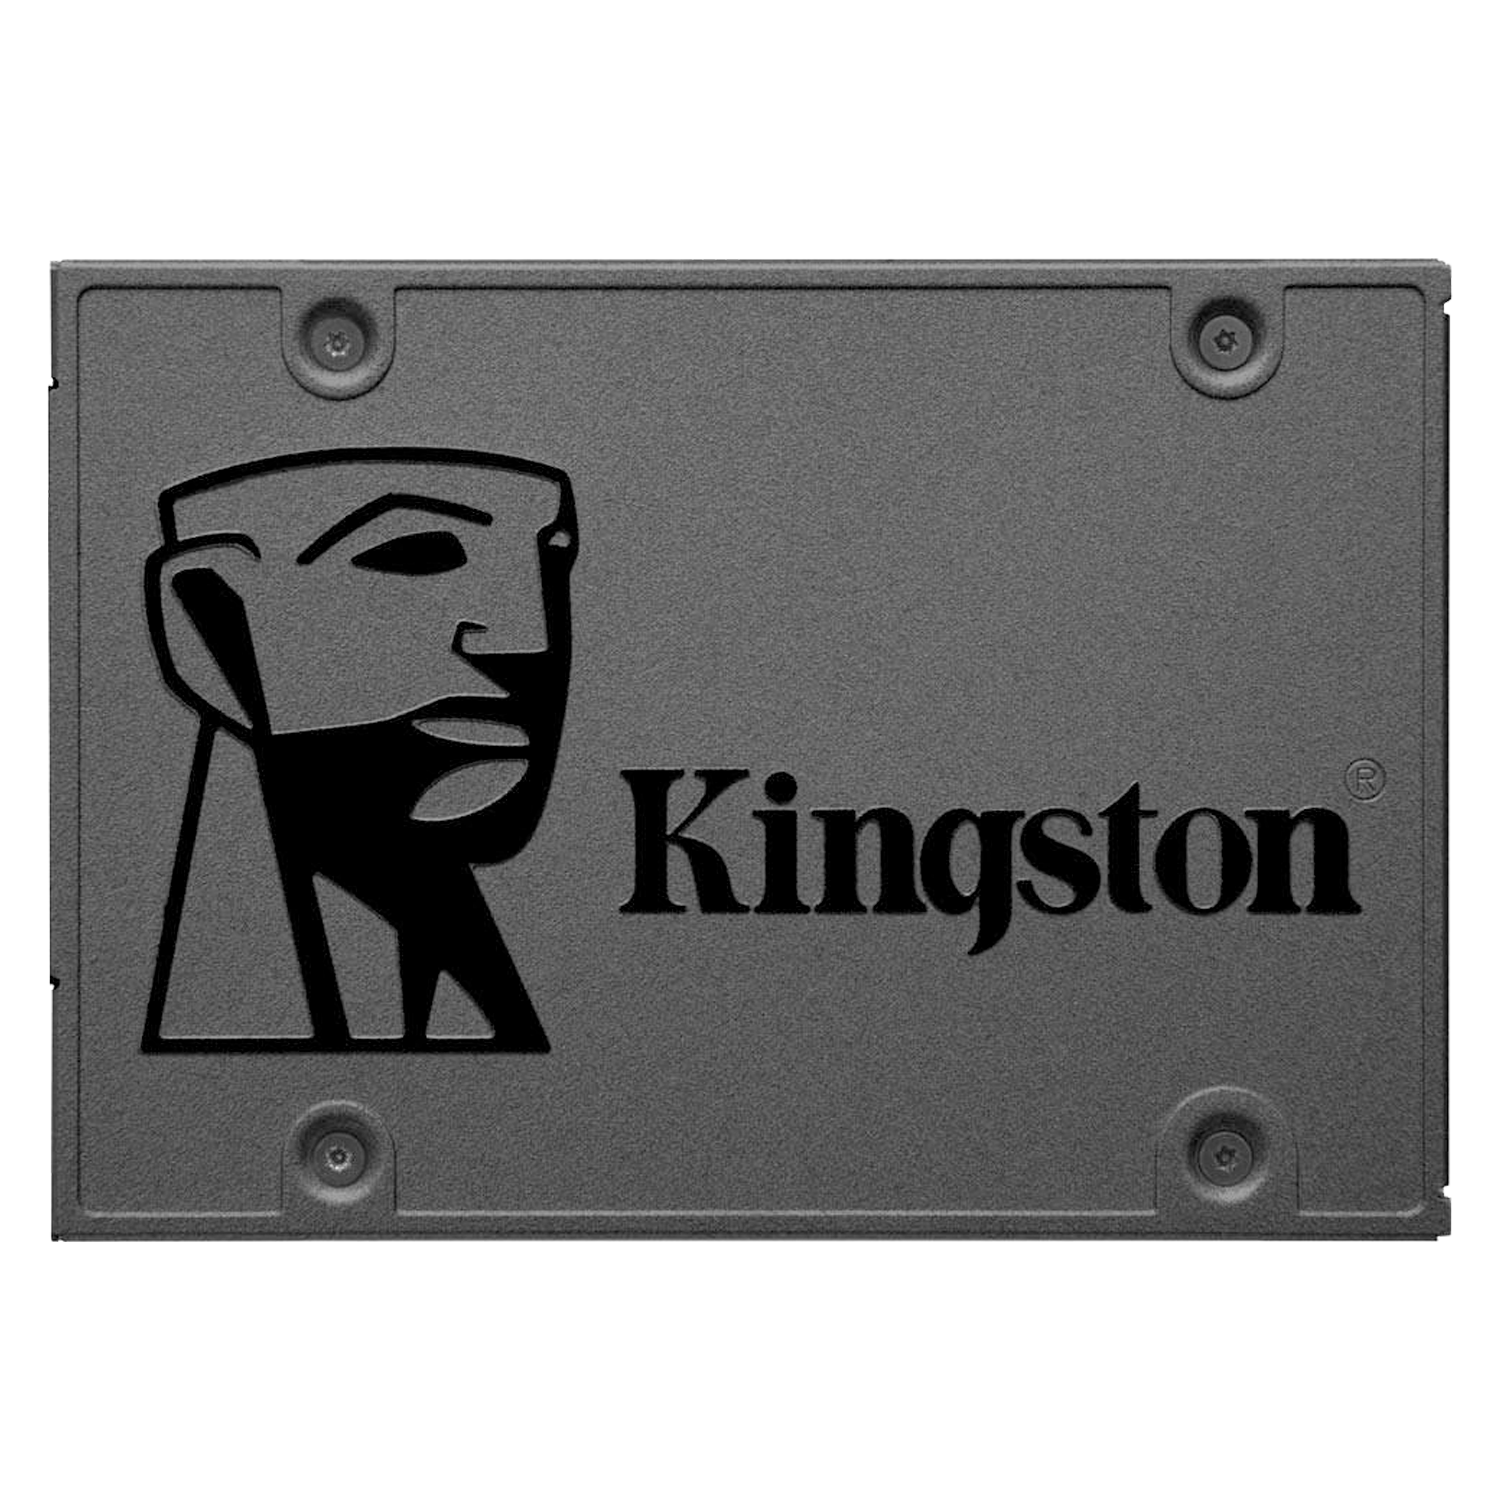 SSD Kingston A400 480GB 2.5" SATA 3 - SA400S37/480G
